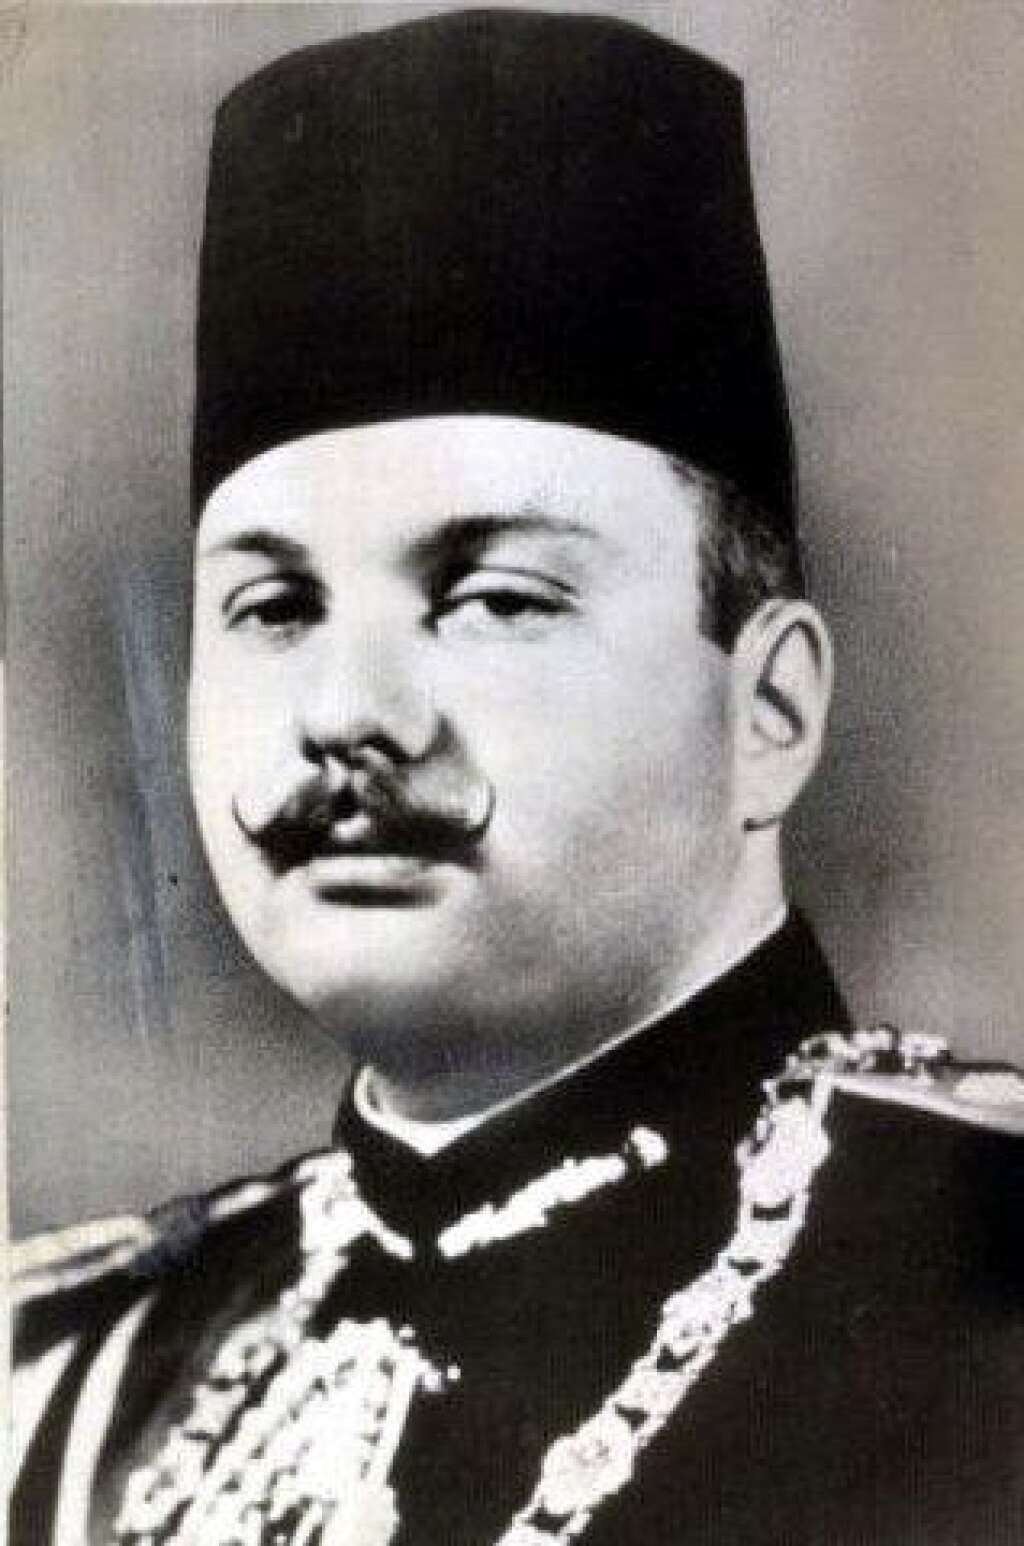 Farouk Ier - Le roi Farouk Ier d'Egypte abdique en juillet 1952 lors de la révolution menée par Nasser, seize ans après son accession au trône. Son fils, Fouad II lui succède, mais est contraint de rejoindre sa famille en exil après la proclamation de la République moins d'un an plus tard, en juin 1953.